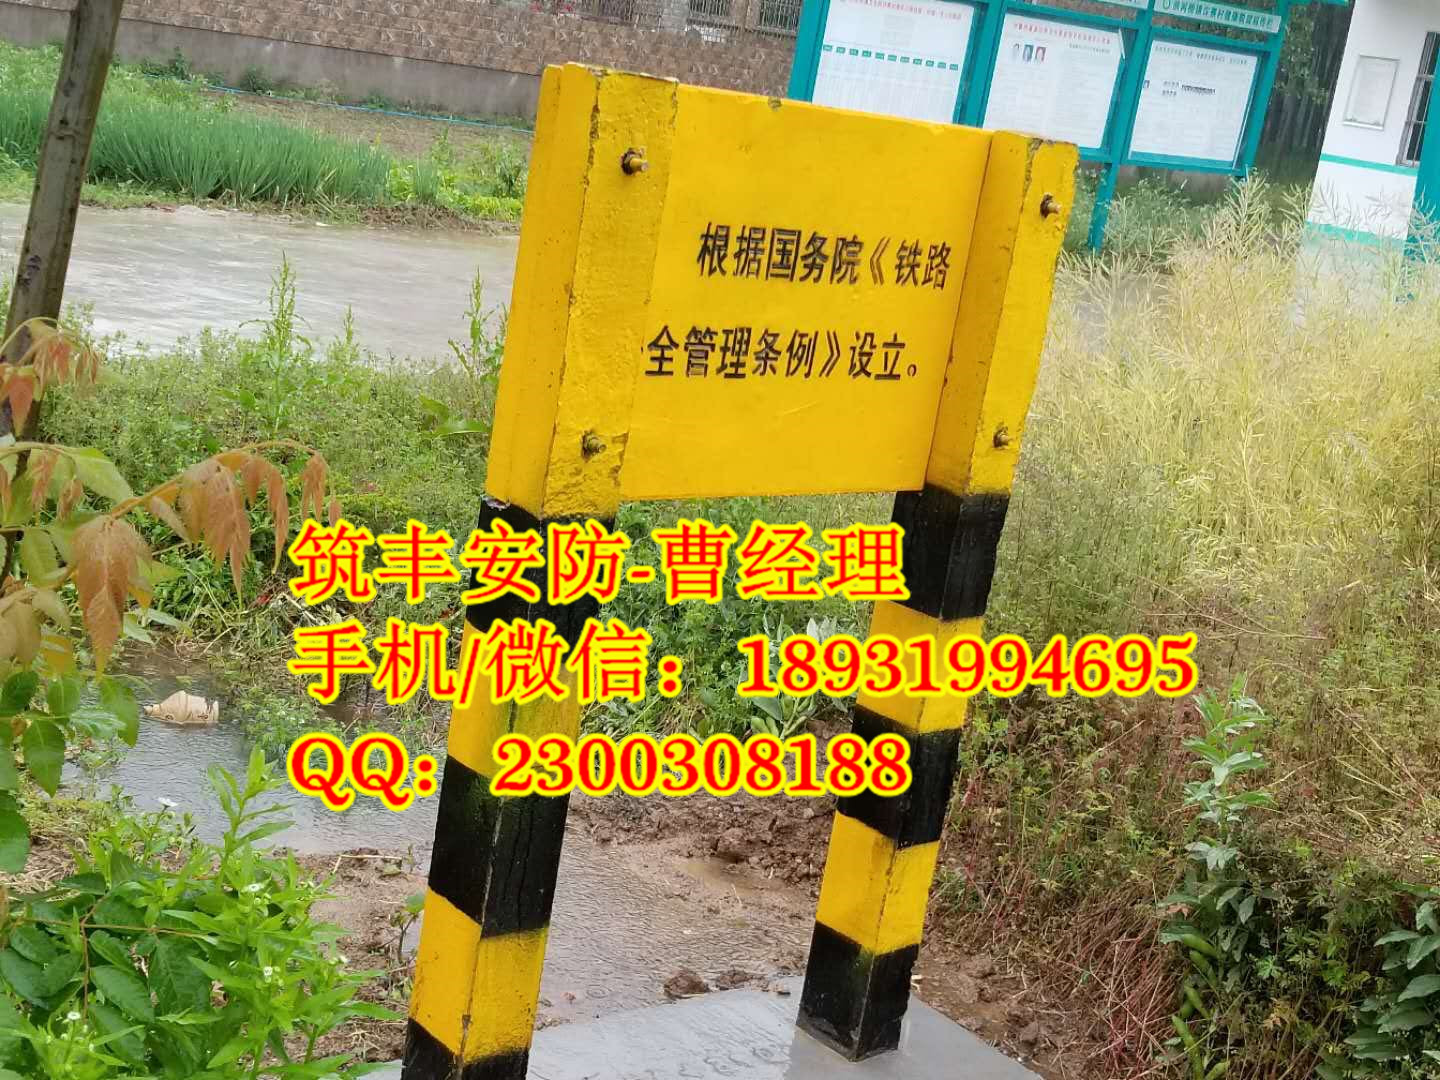 萍乡铁路公里标厂家国家标准